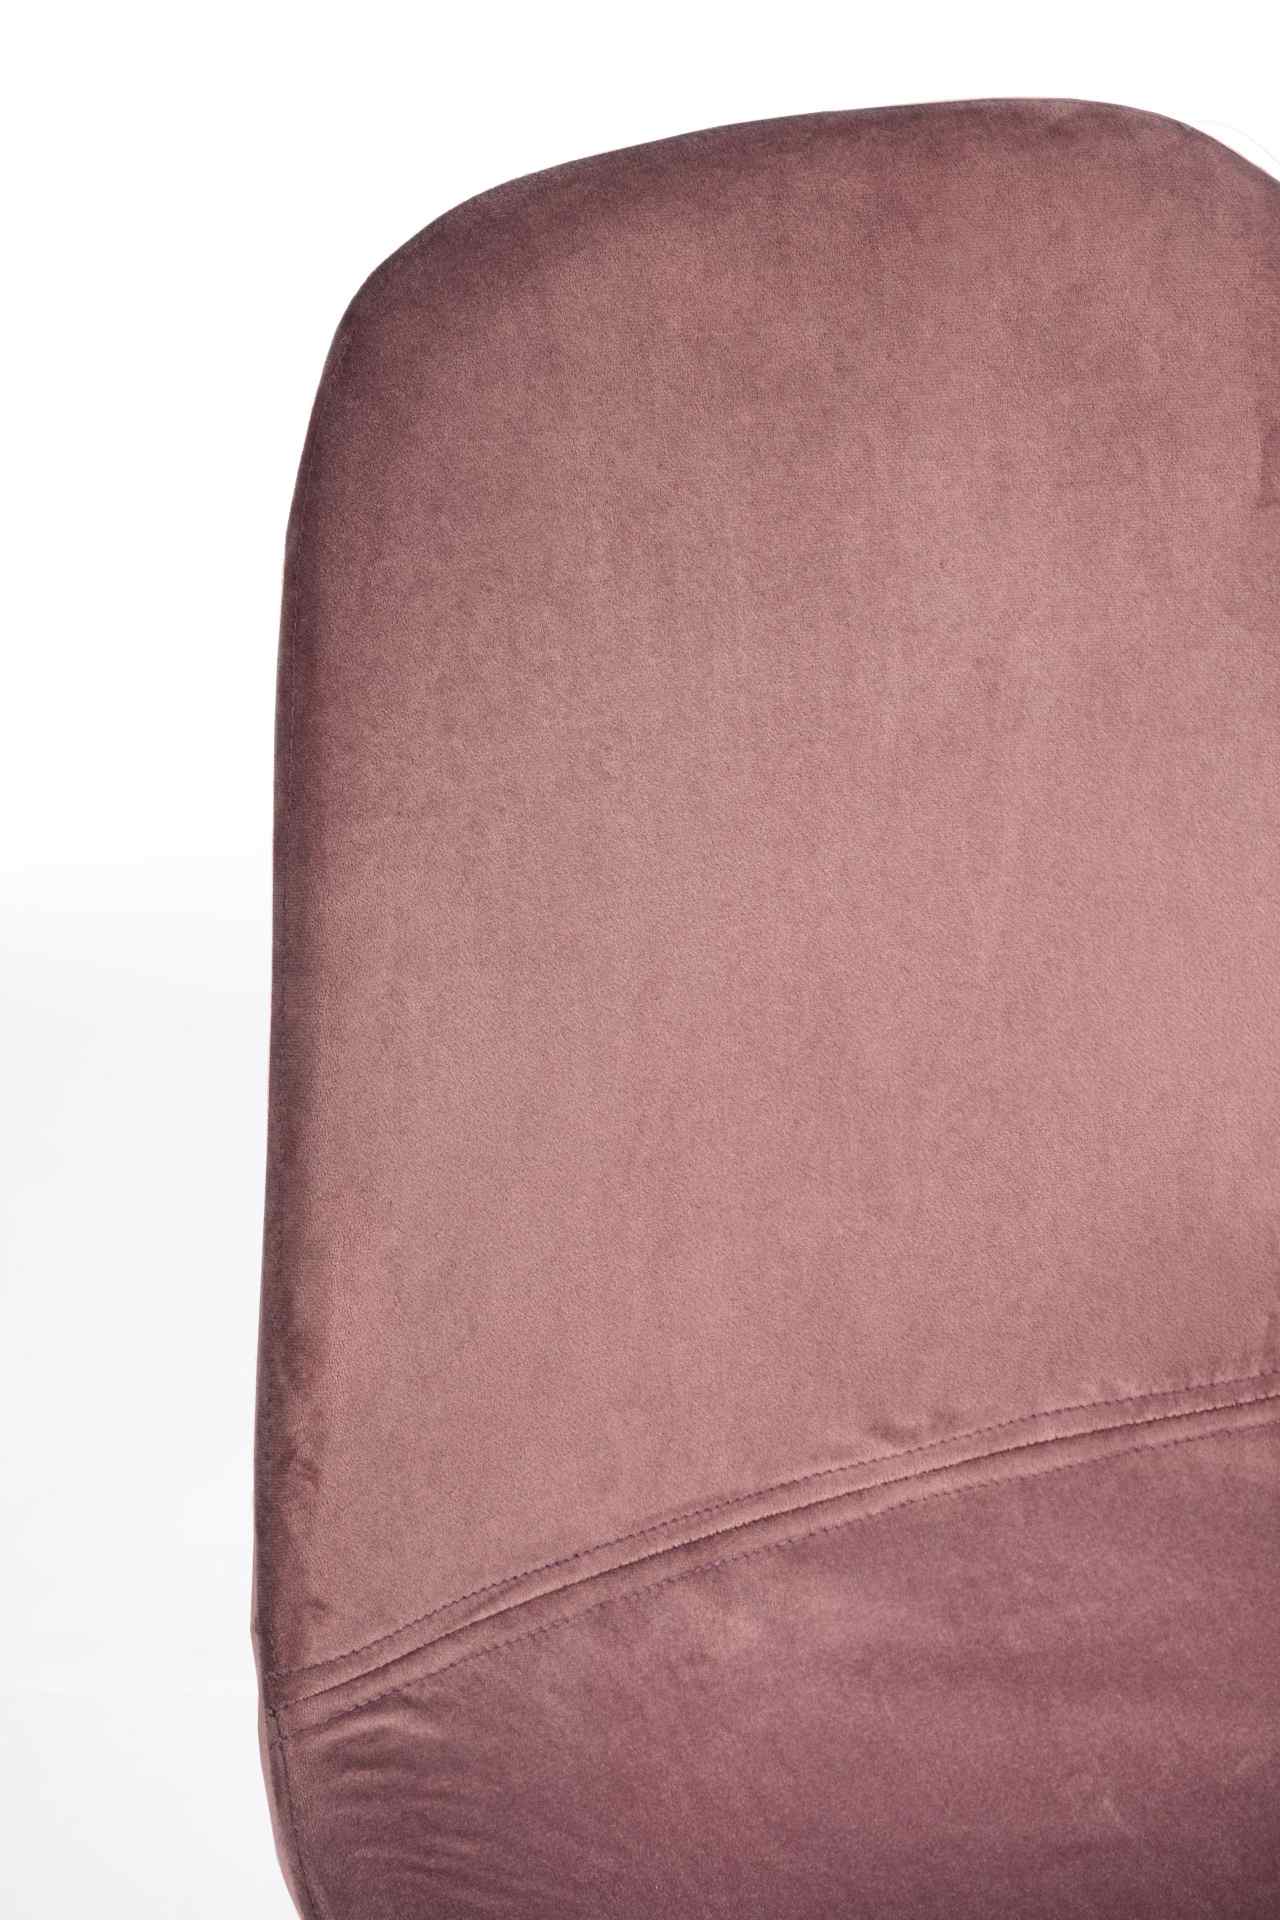 Der Esszimmerstuhl Irelia überzeugt mit seinem modernem Design. Gefertigt wurde der Stuhl aus einem Samt-Bezug, welcher einen rosa Farbton besitzt. Das Gestell ist aus Metall und ist schwarz. Die Sitzhöhe beträgt 47 cm.